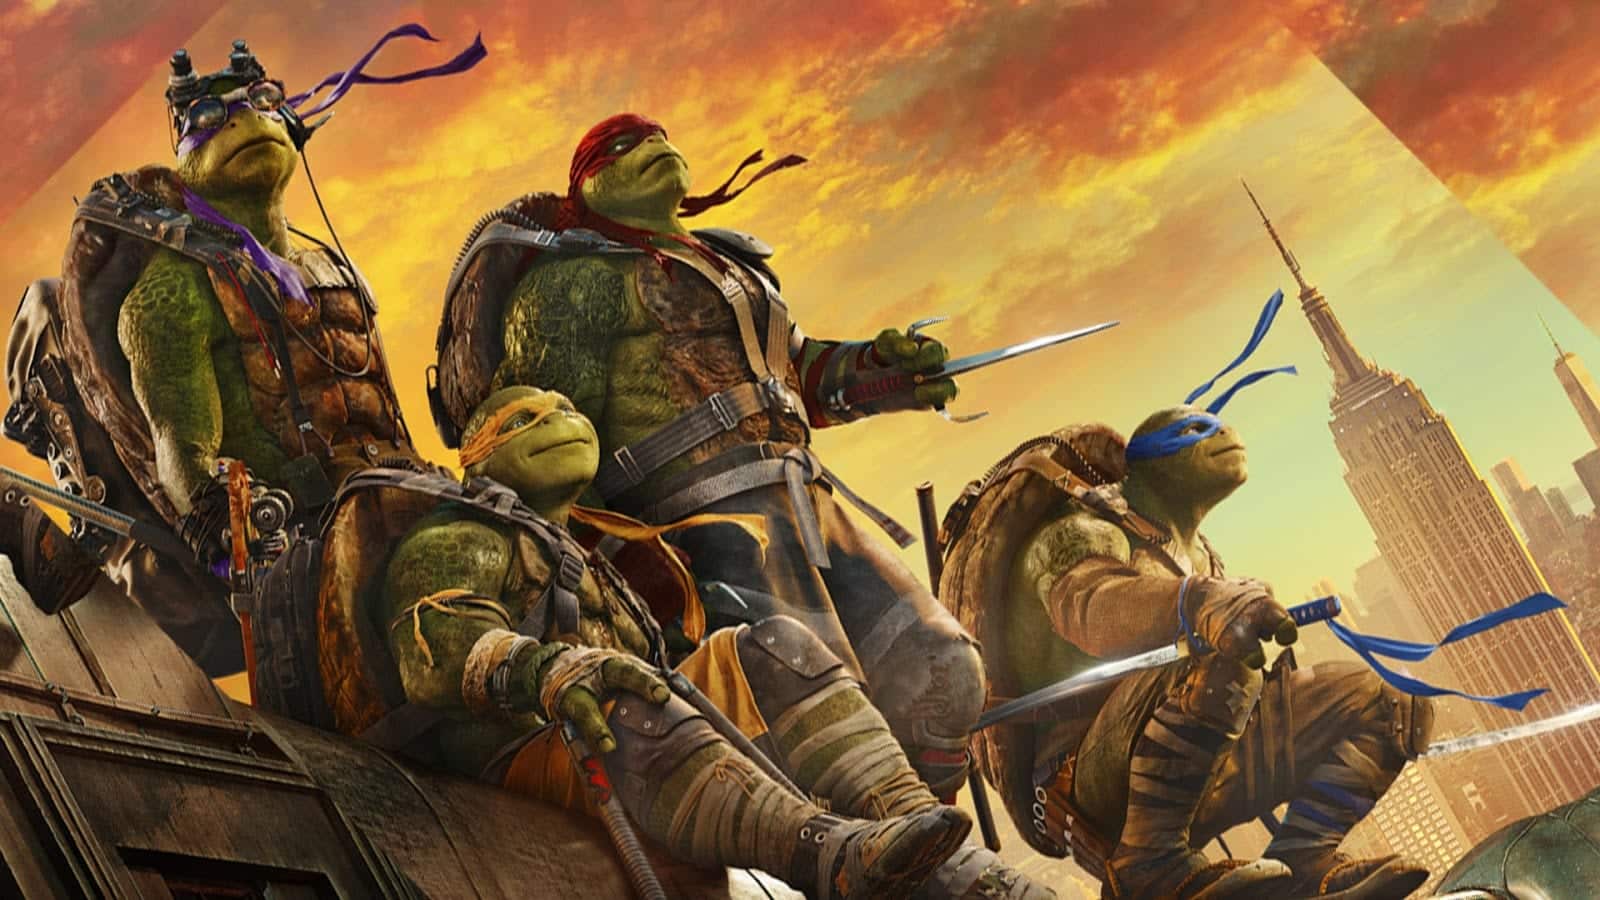  Ninja Turtles- Die ganze Geschichte, Charaktere und Filme